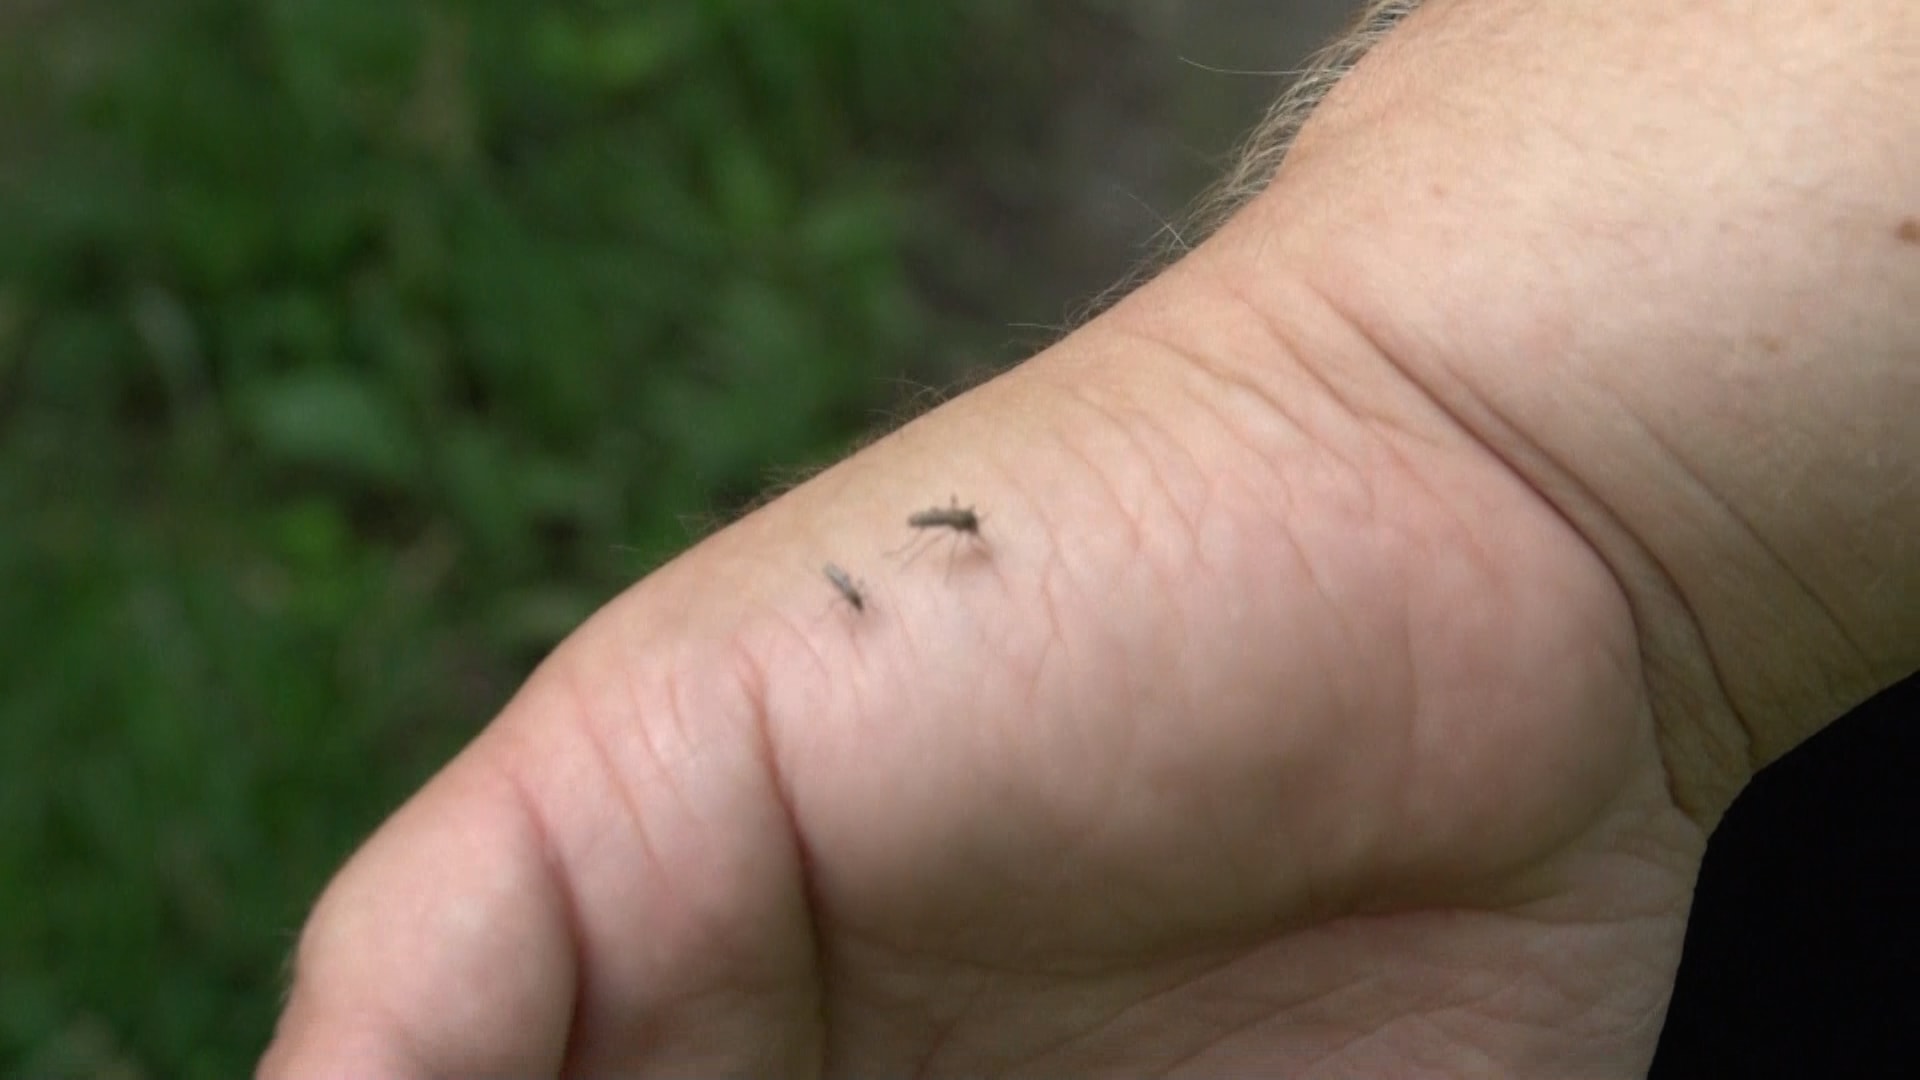 Komáři tygrovaný a tropický jsou charakterističtí tmavým zbarvením s bílými proužky na těle i končetinách. Jsou ještě menší než klasický český komár pisklavý (Culex pipiens), měří jenom okolo 3 mm.